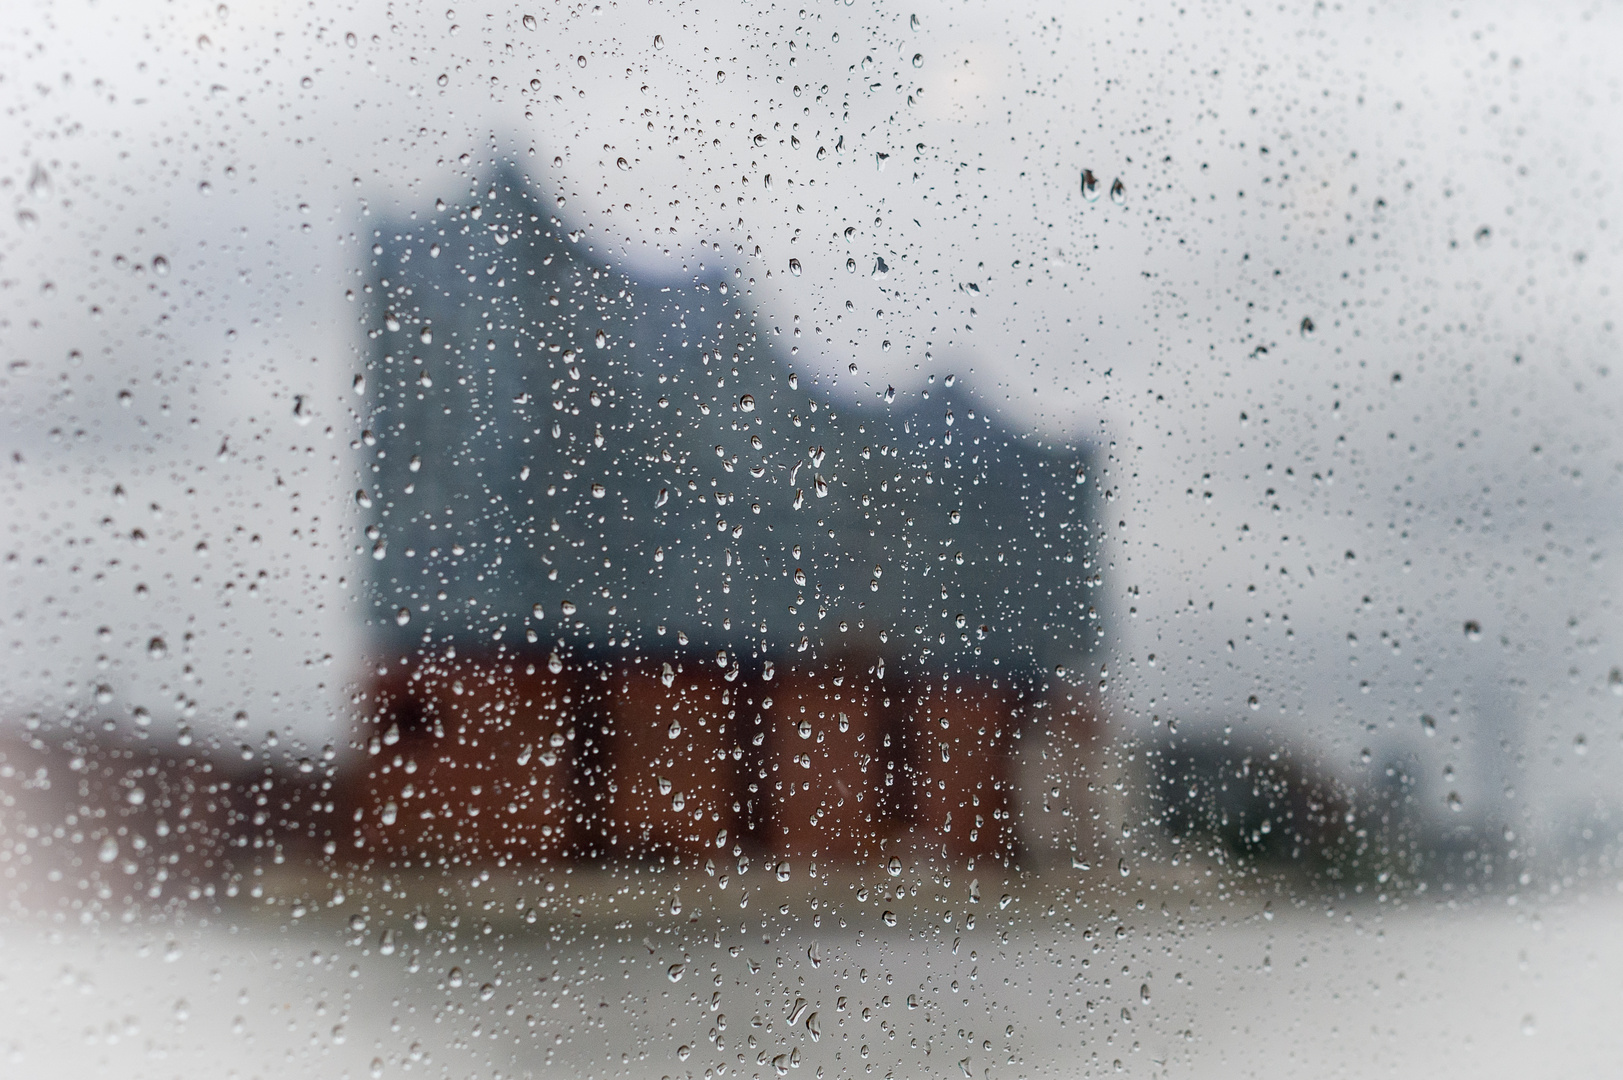 Fotosafari bei Regen im Hafen - Elbphilharmonie